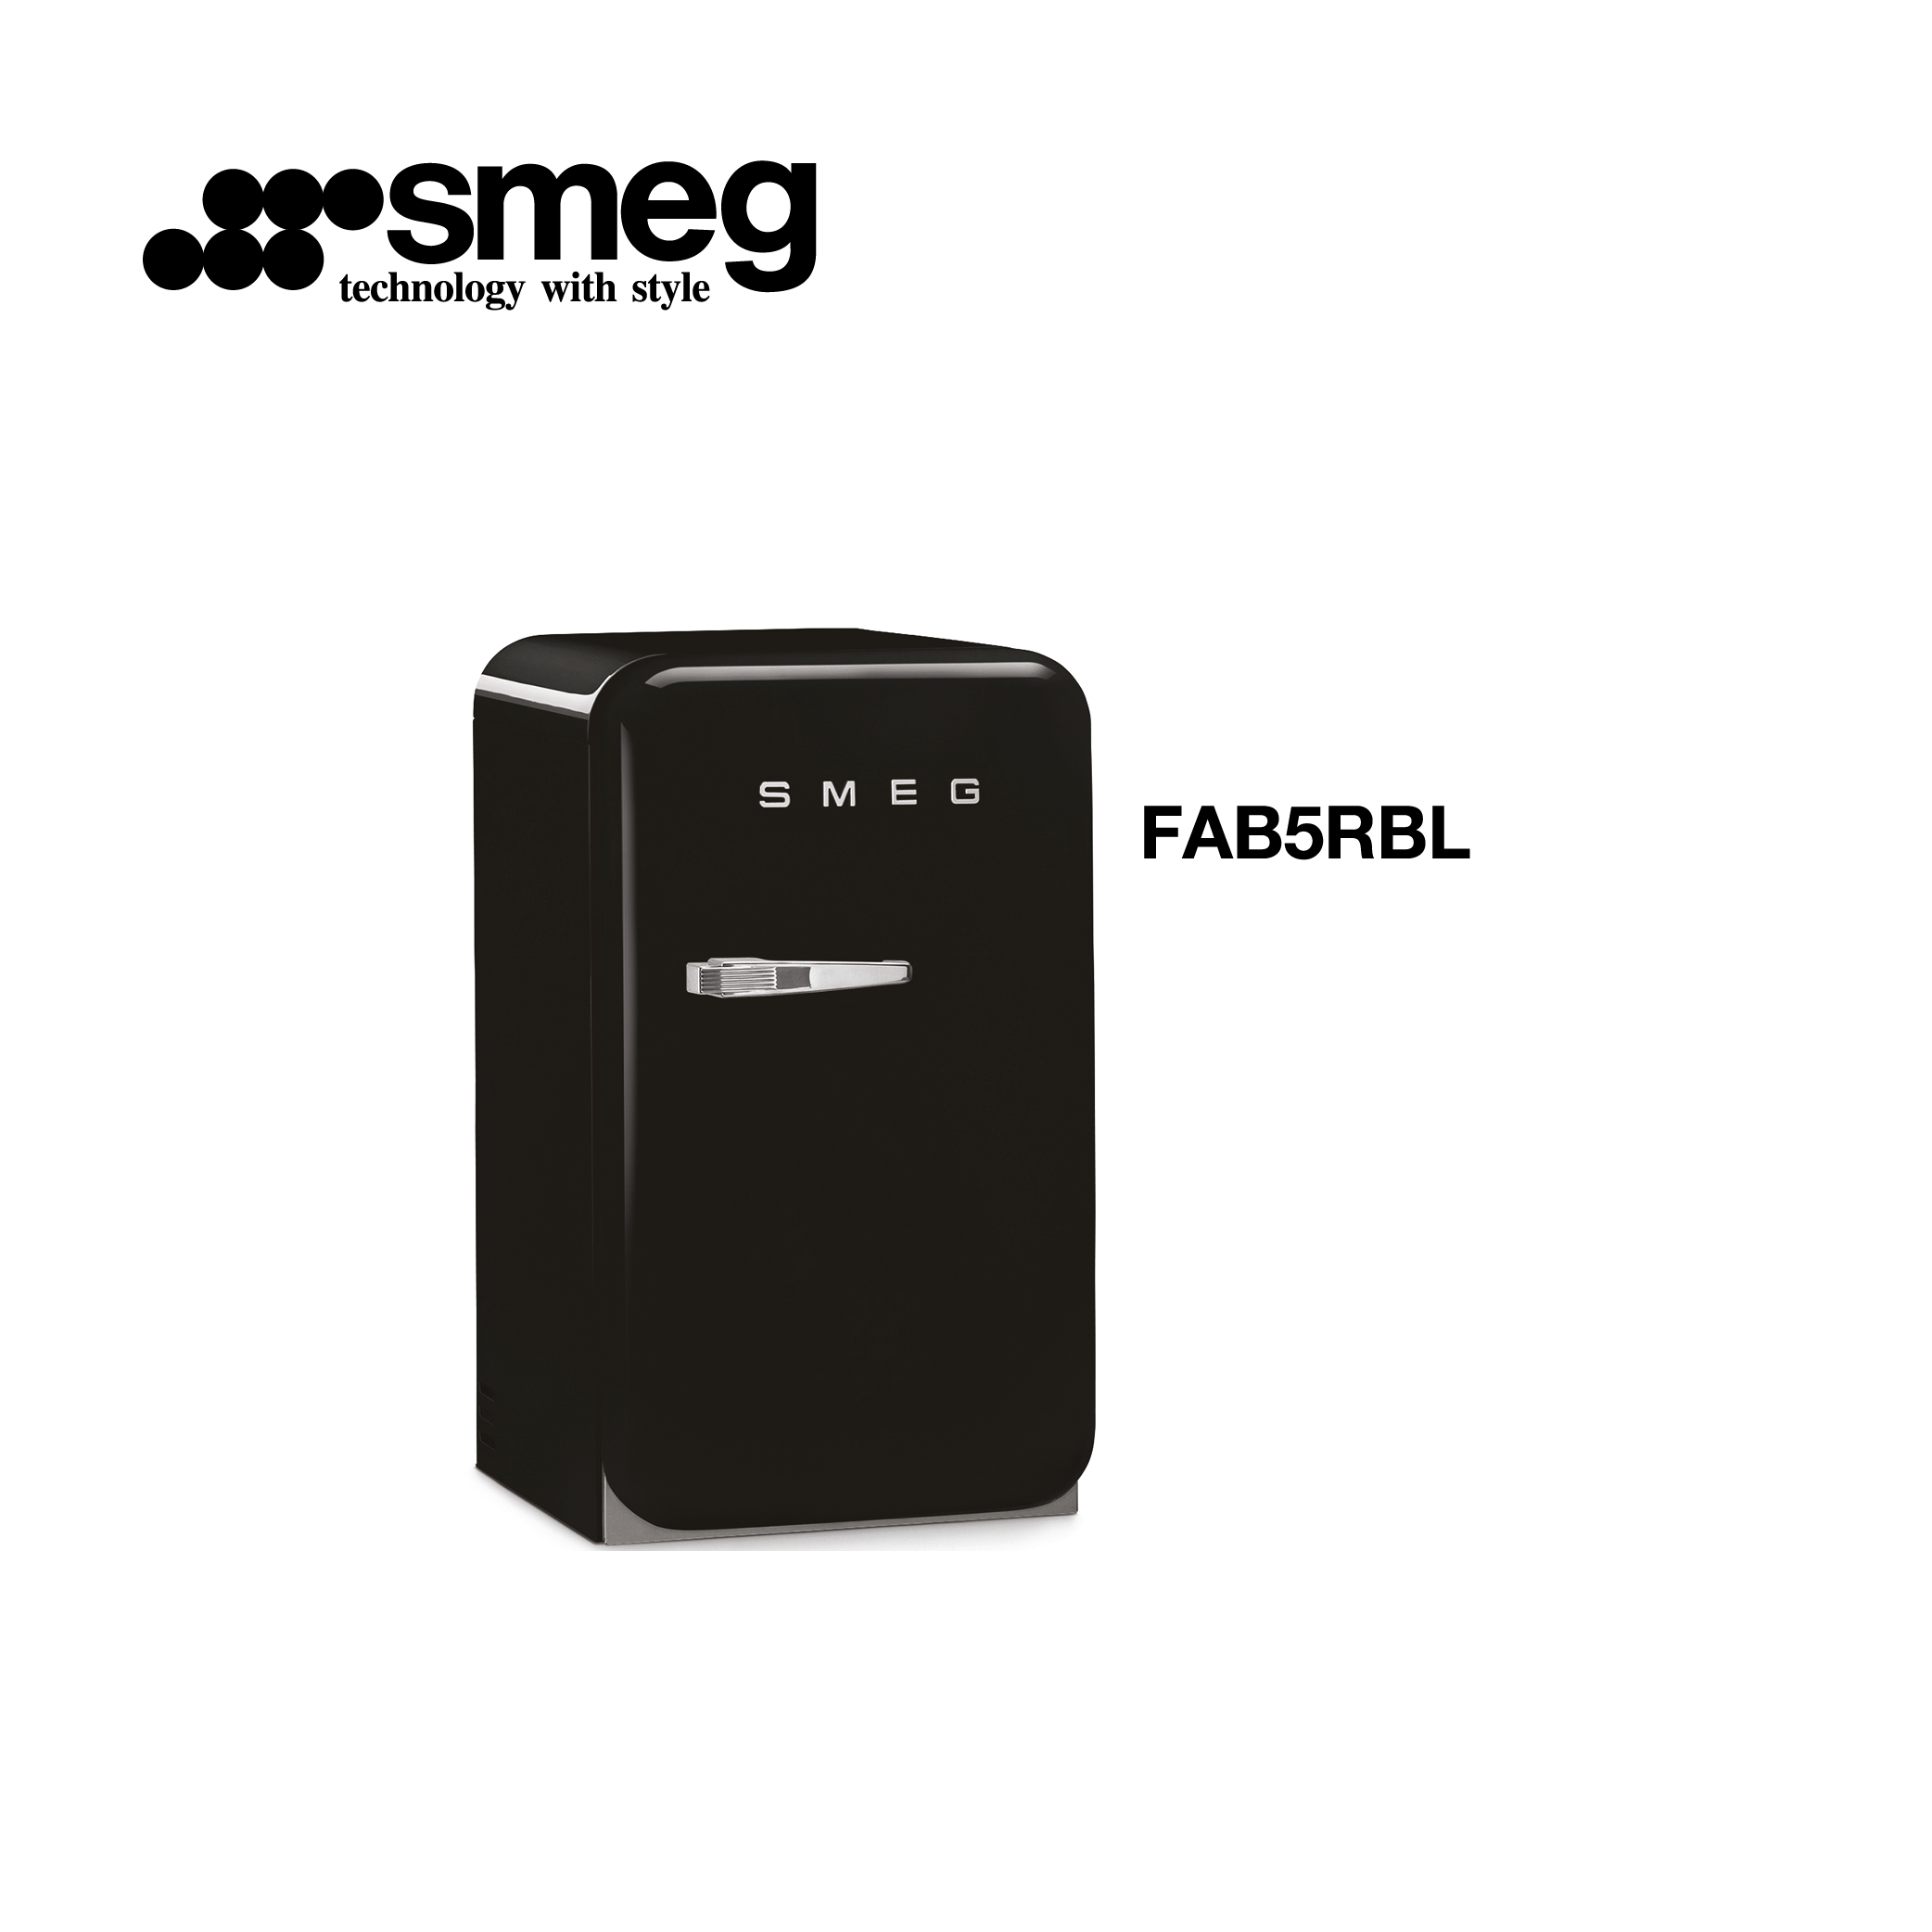 minibar refrigerateur congelateur 114l 55cm couleur Noir style années 50  FAB5RBL - Smeg